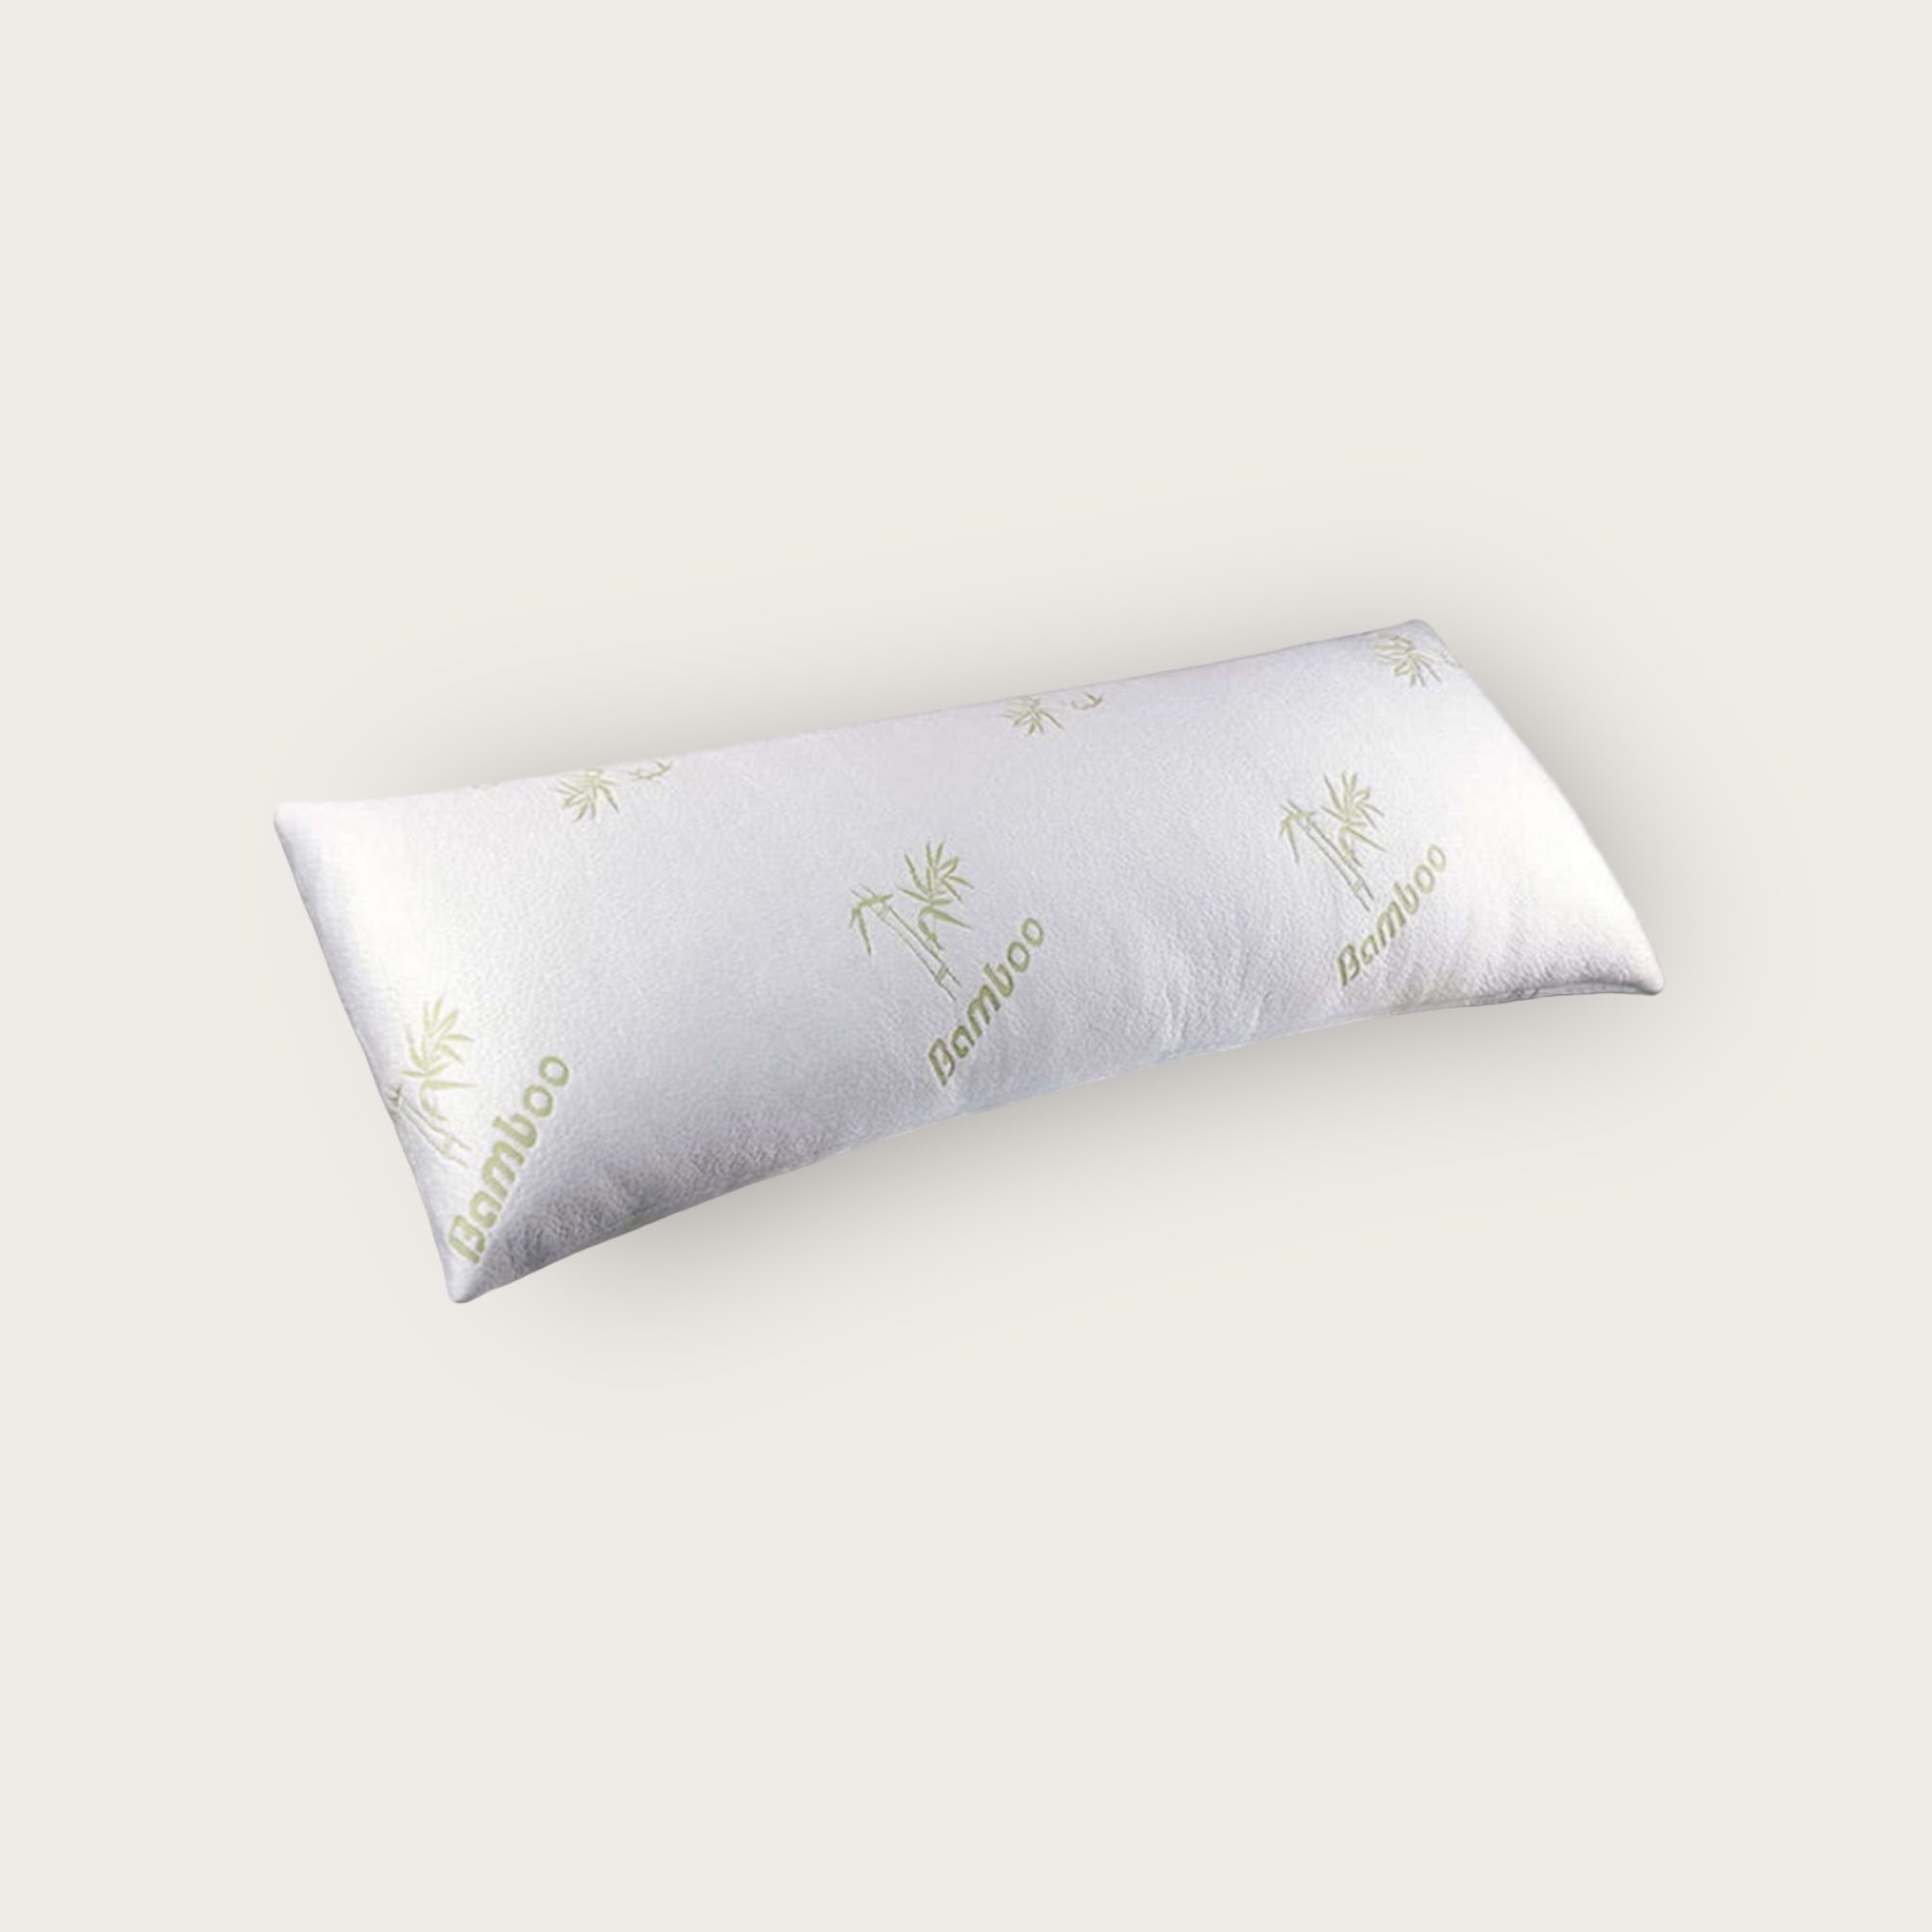 Se 150cm, Luksus Body Pillow med Bambus Cover og Memory Foam hos NordicZen